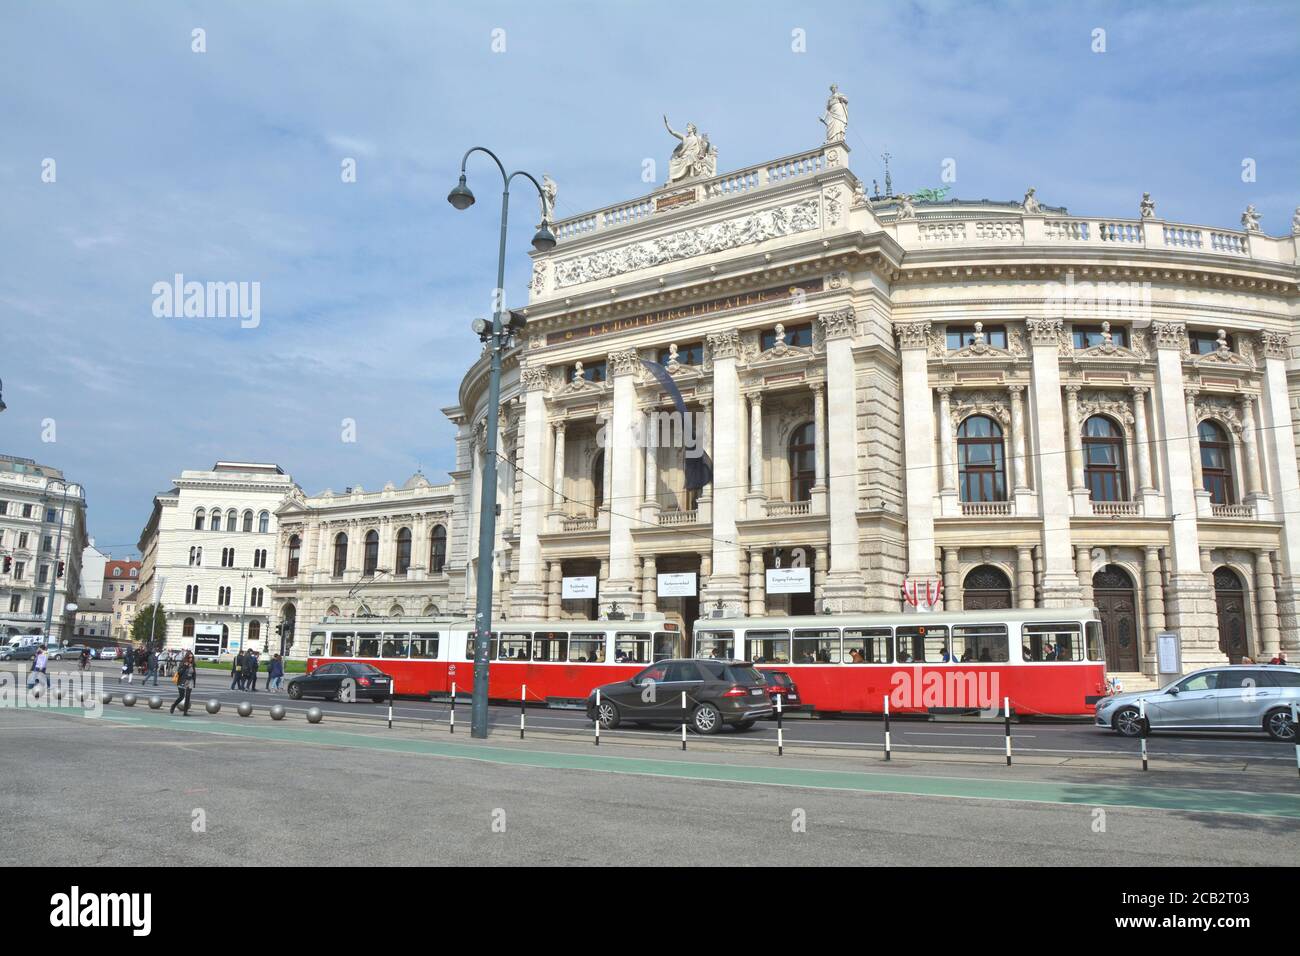 VIENNA, AUSTRIA - 03 MAGGIO 2016 : il Burgtheater, il Teatro Nazionale austriaco di Vienna. Il tram rosso passa accanto all'edificio del teatro. Foto Stock